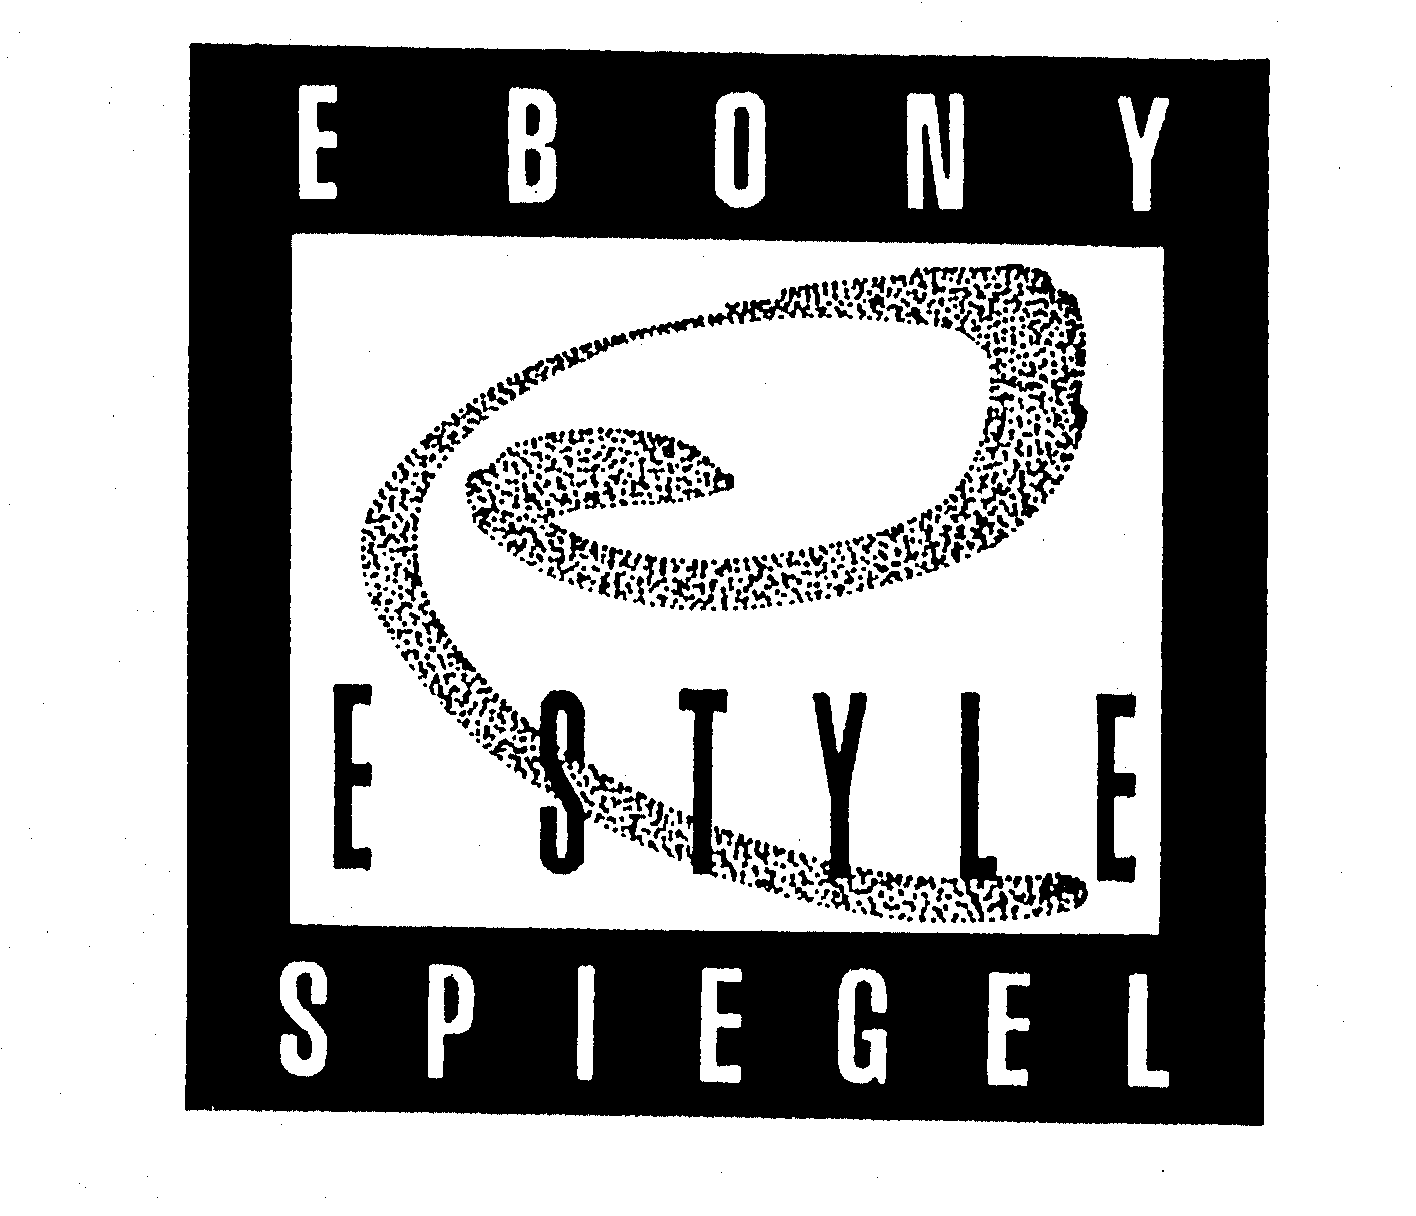  EBONY E STYLE SPIEGEL